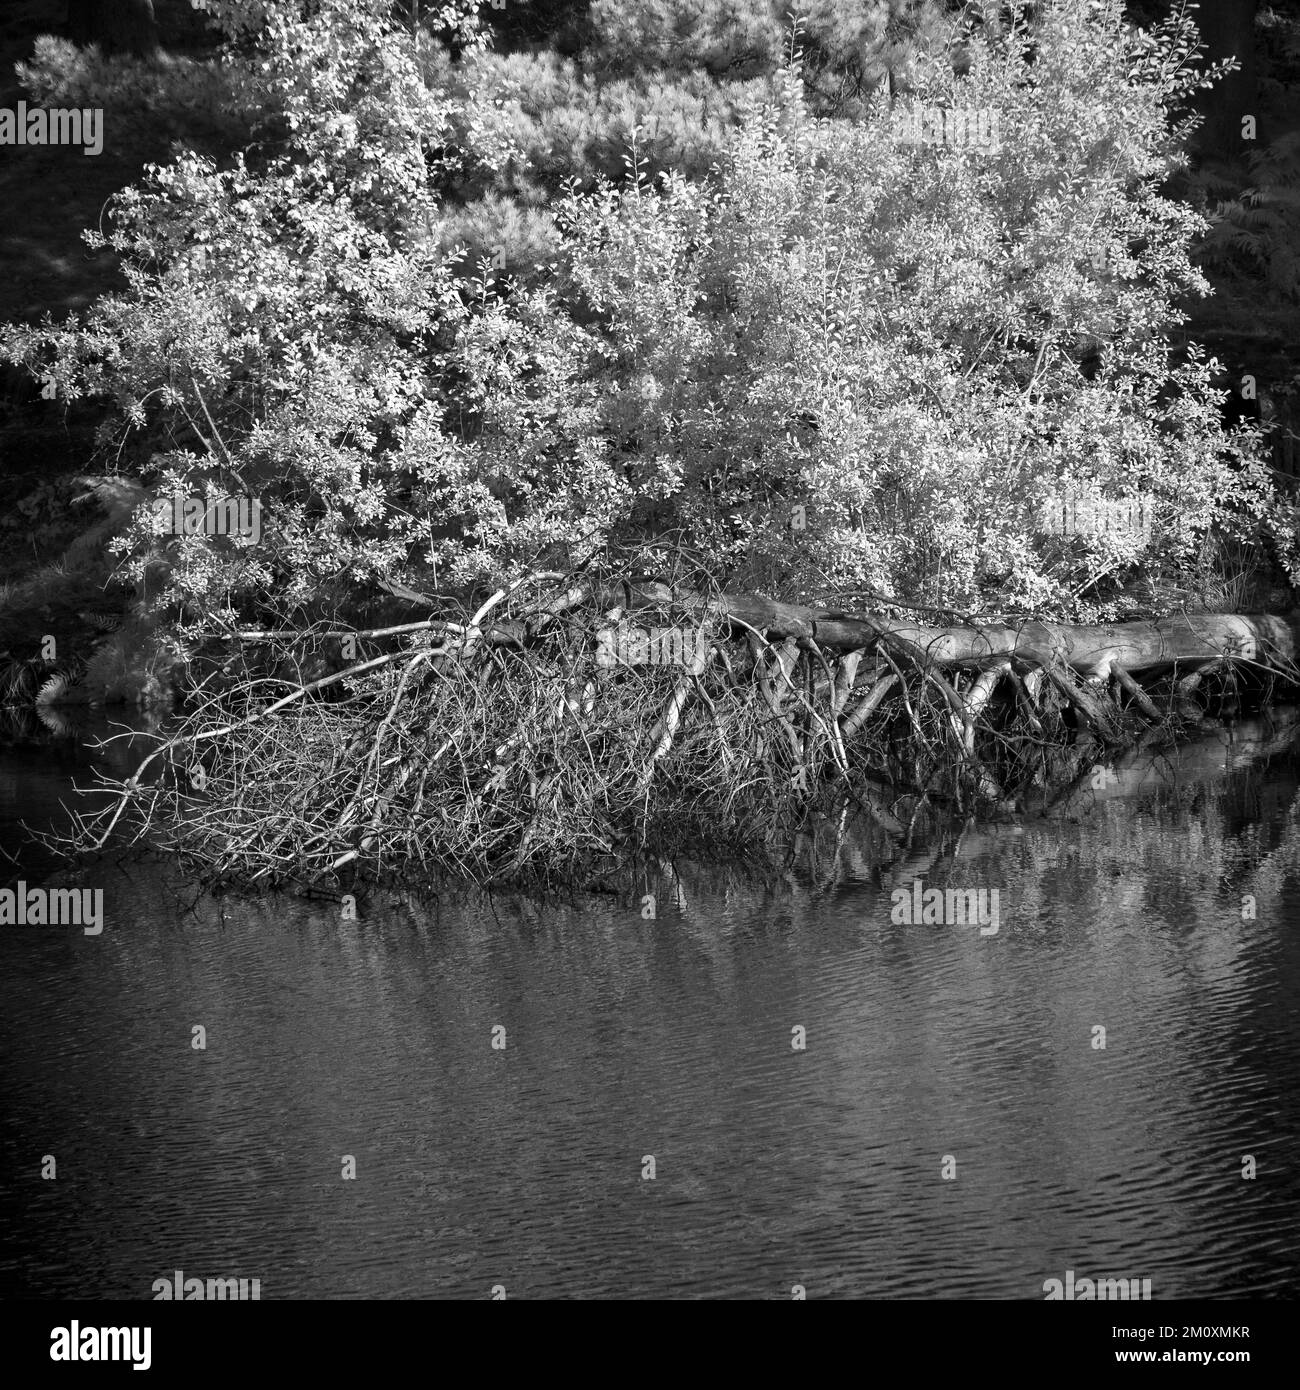 Photographie en noir et blanc d'un arbre tombé au bord de l'eau sur Cannock Chase AONB Area of Outstanding Natural Beauty dans le Staffordshire, Angleterre, Royaume-Uni Banque D'Images